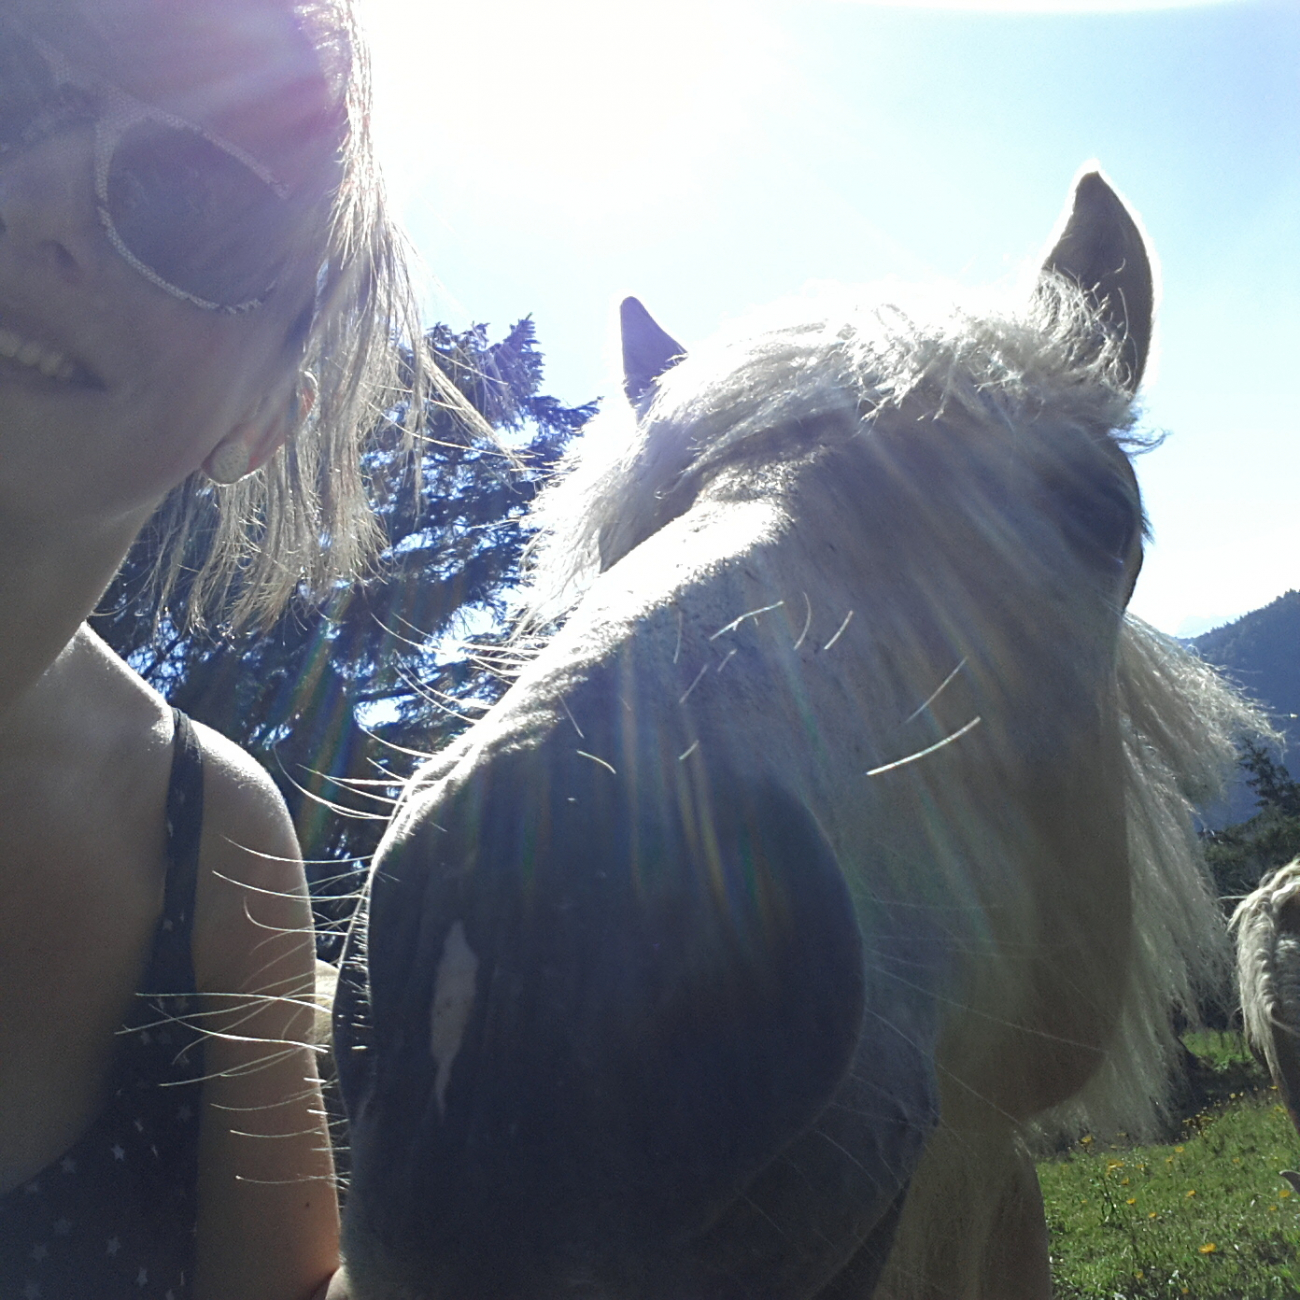 Nemusela jsem ani žádat o svolení - koně mi do záběru na selfie prakticky sami lezli